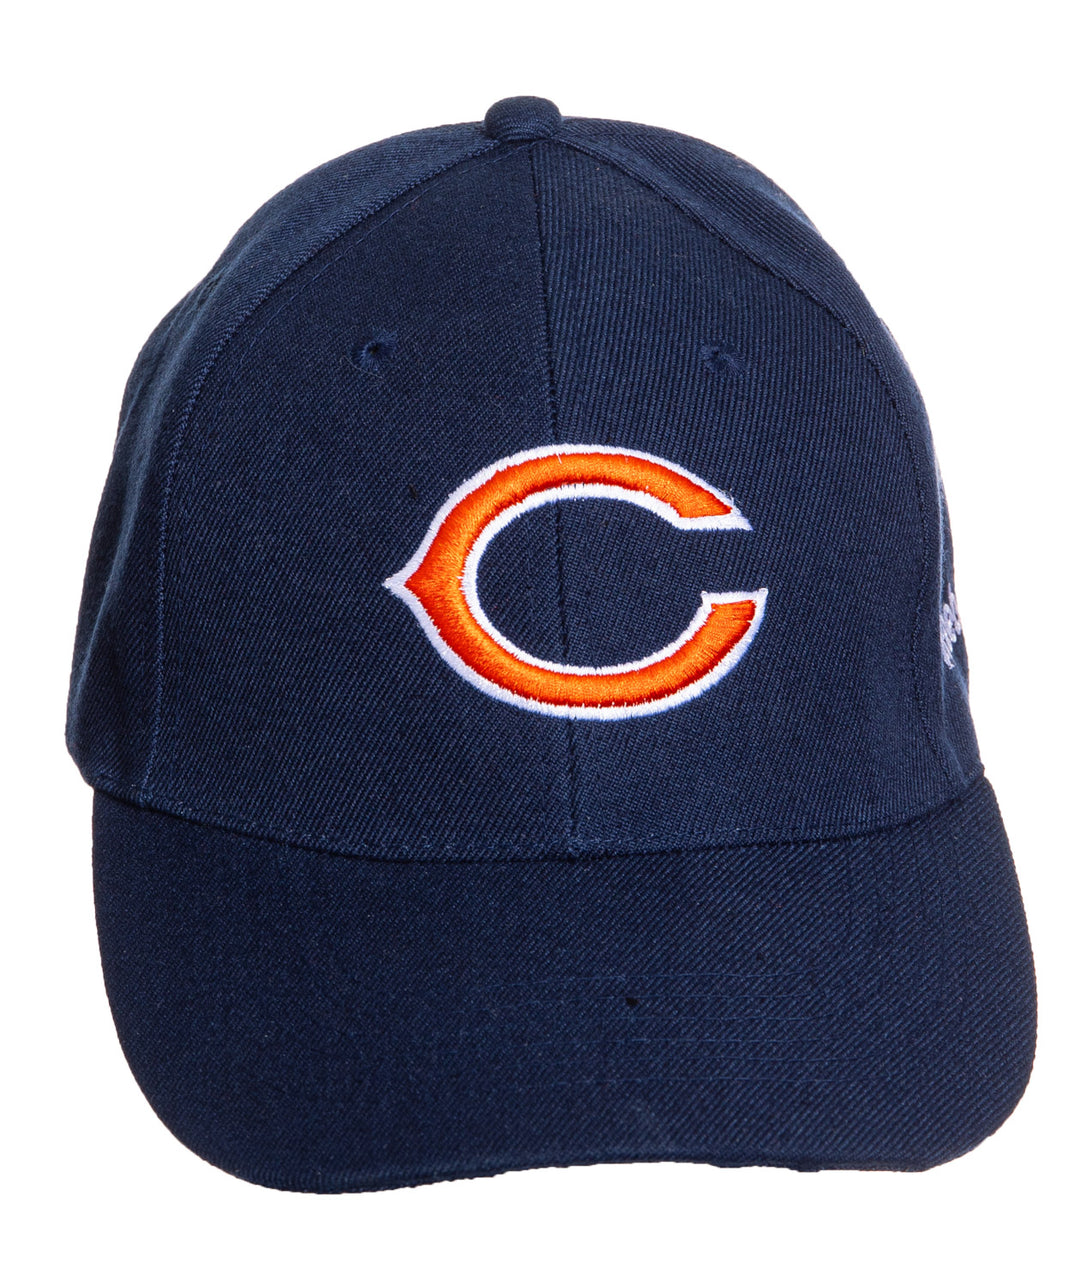 Chicago Bears NFL Adjustable Hat